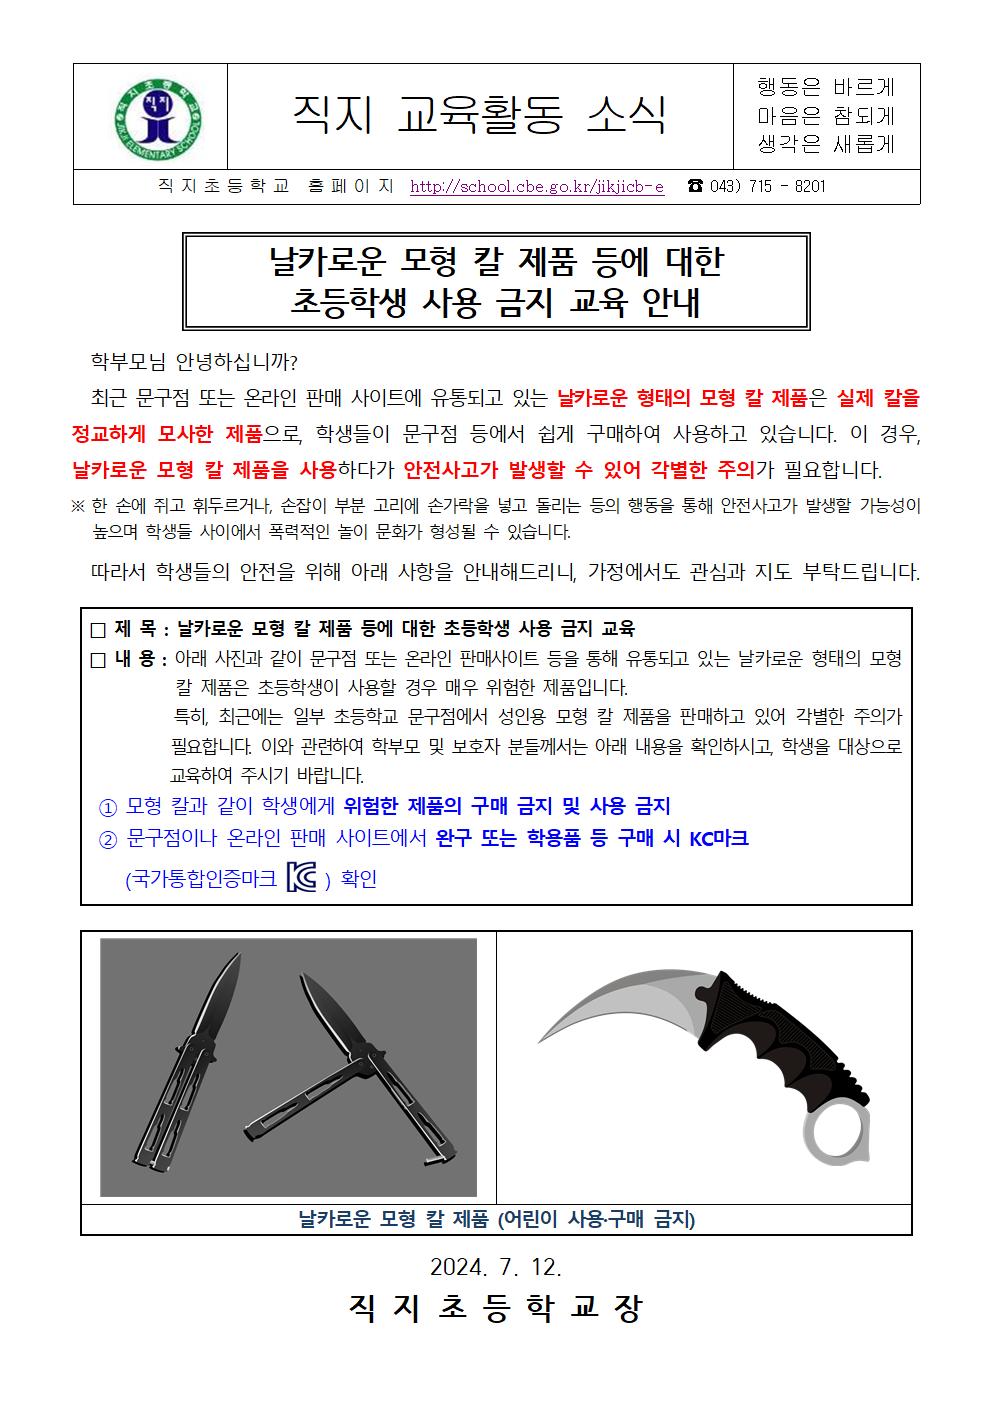 날카로운 모형 칼 제품 등에 대한 사용 금지 교육 안내 가정통신문001